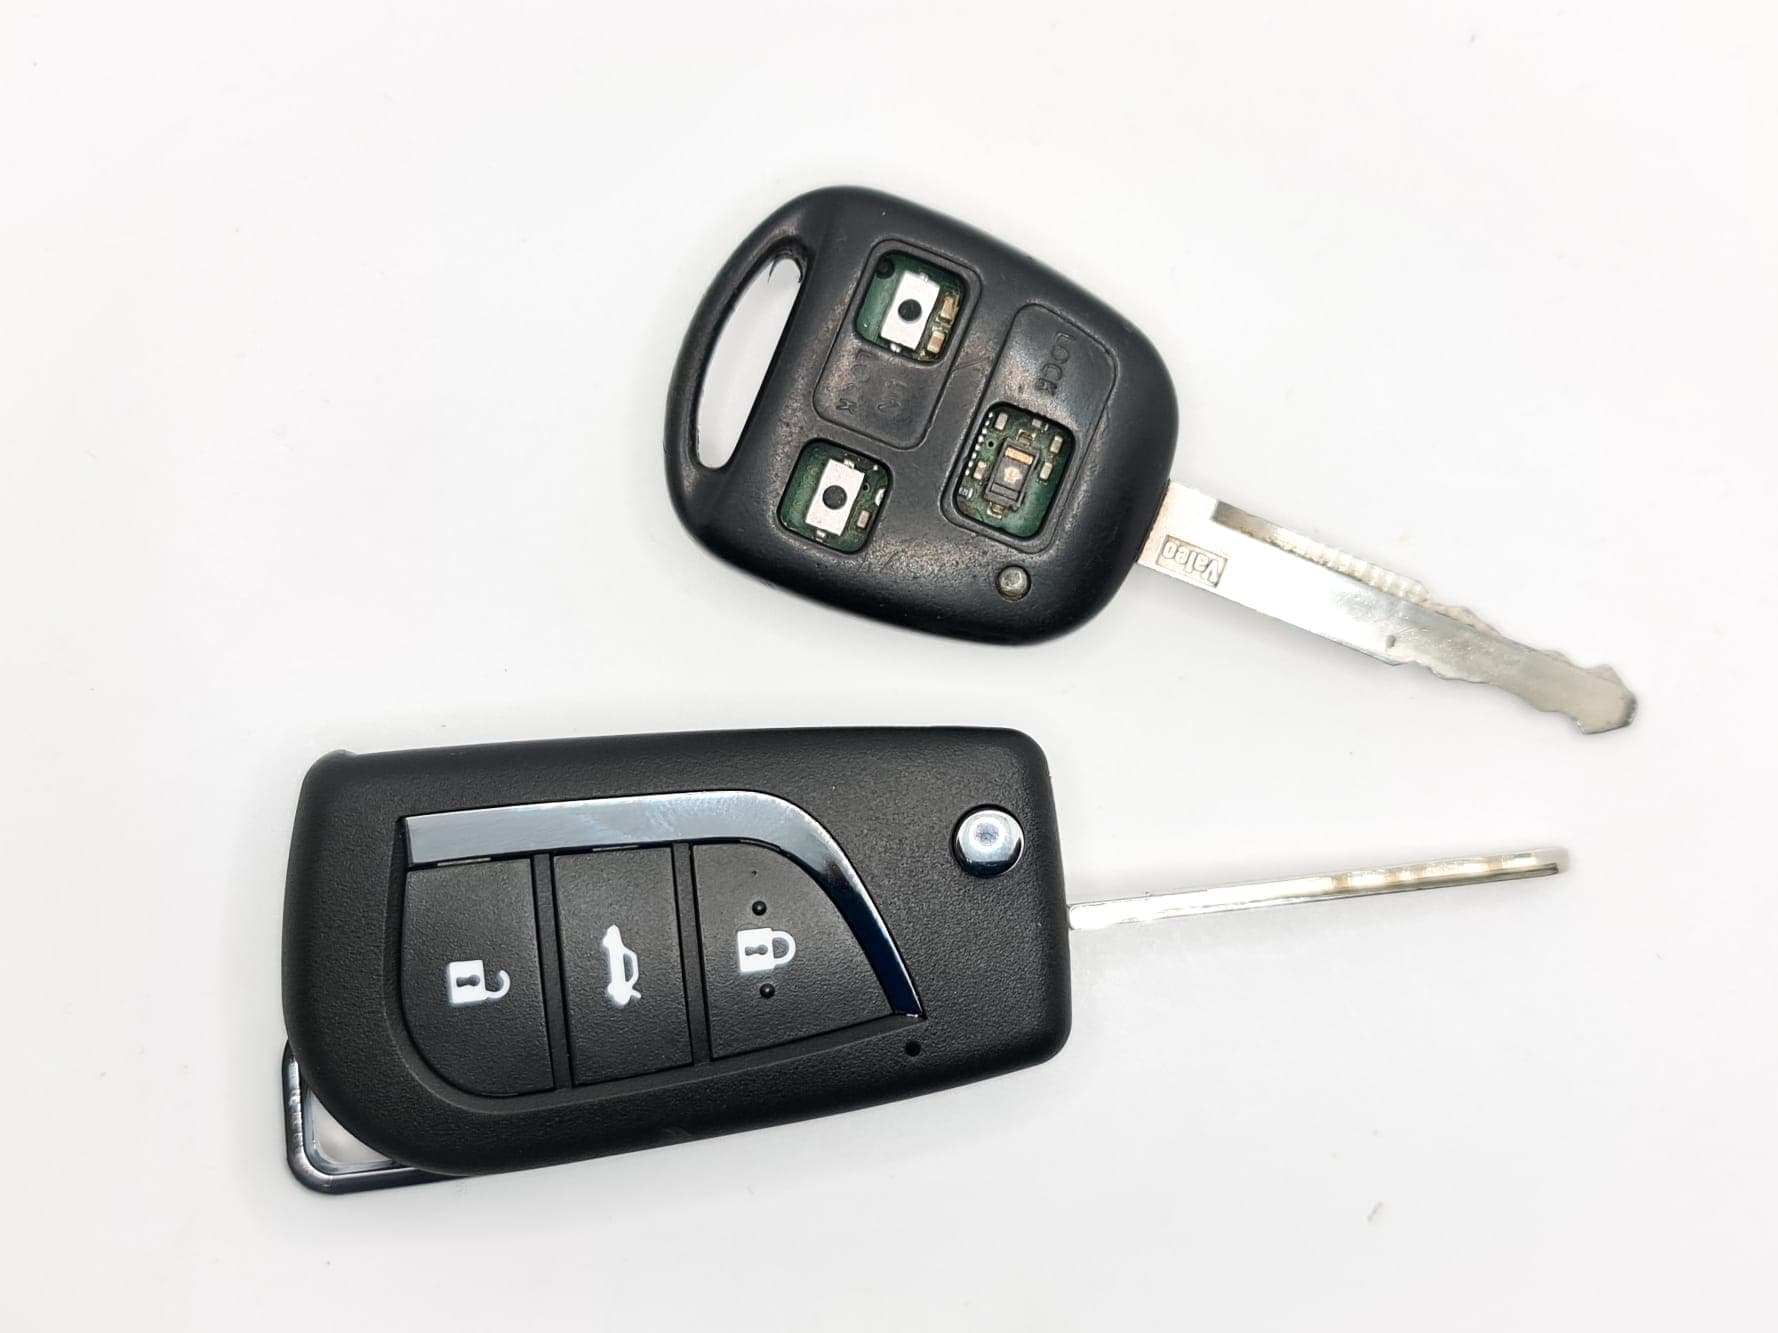 ¿Has perdido las llaves de tu coche? Somos la solución que buscabas